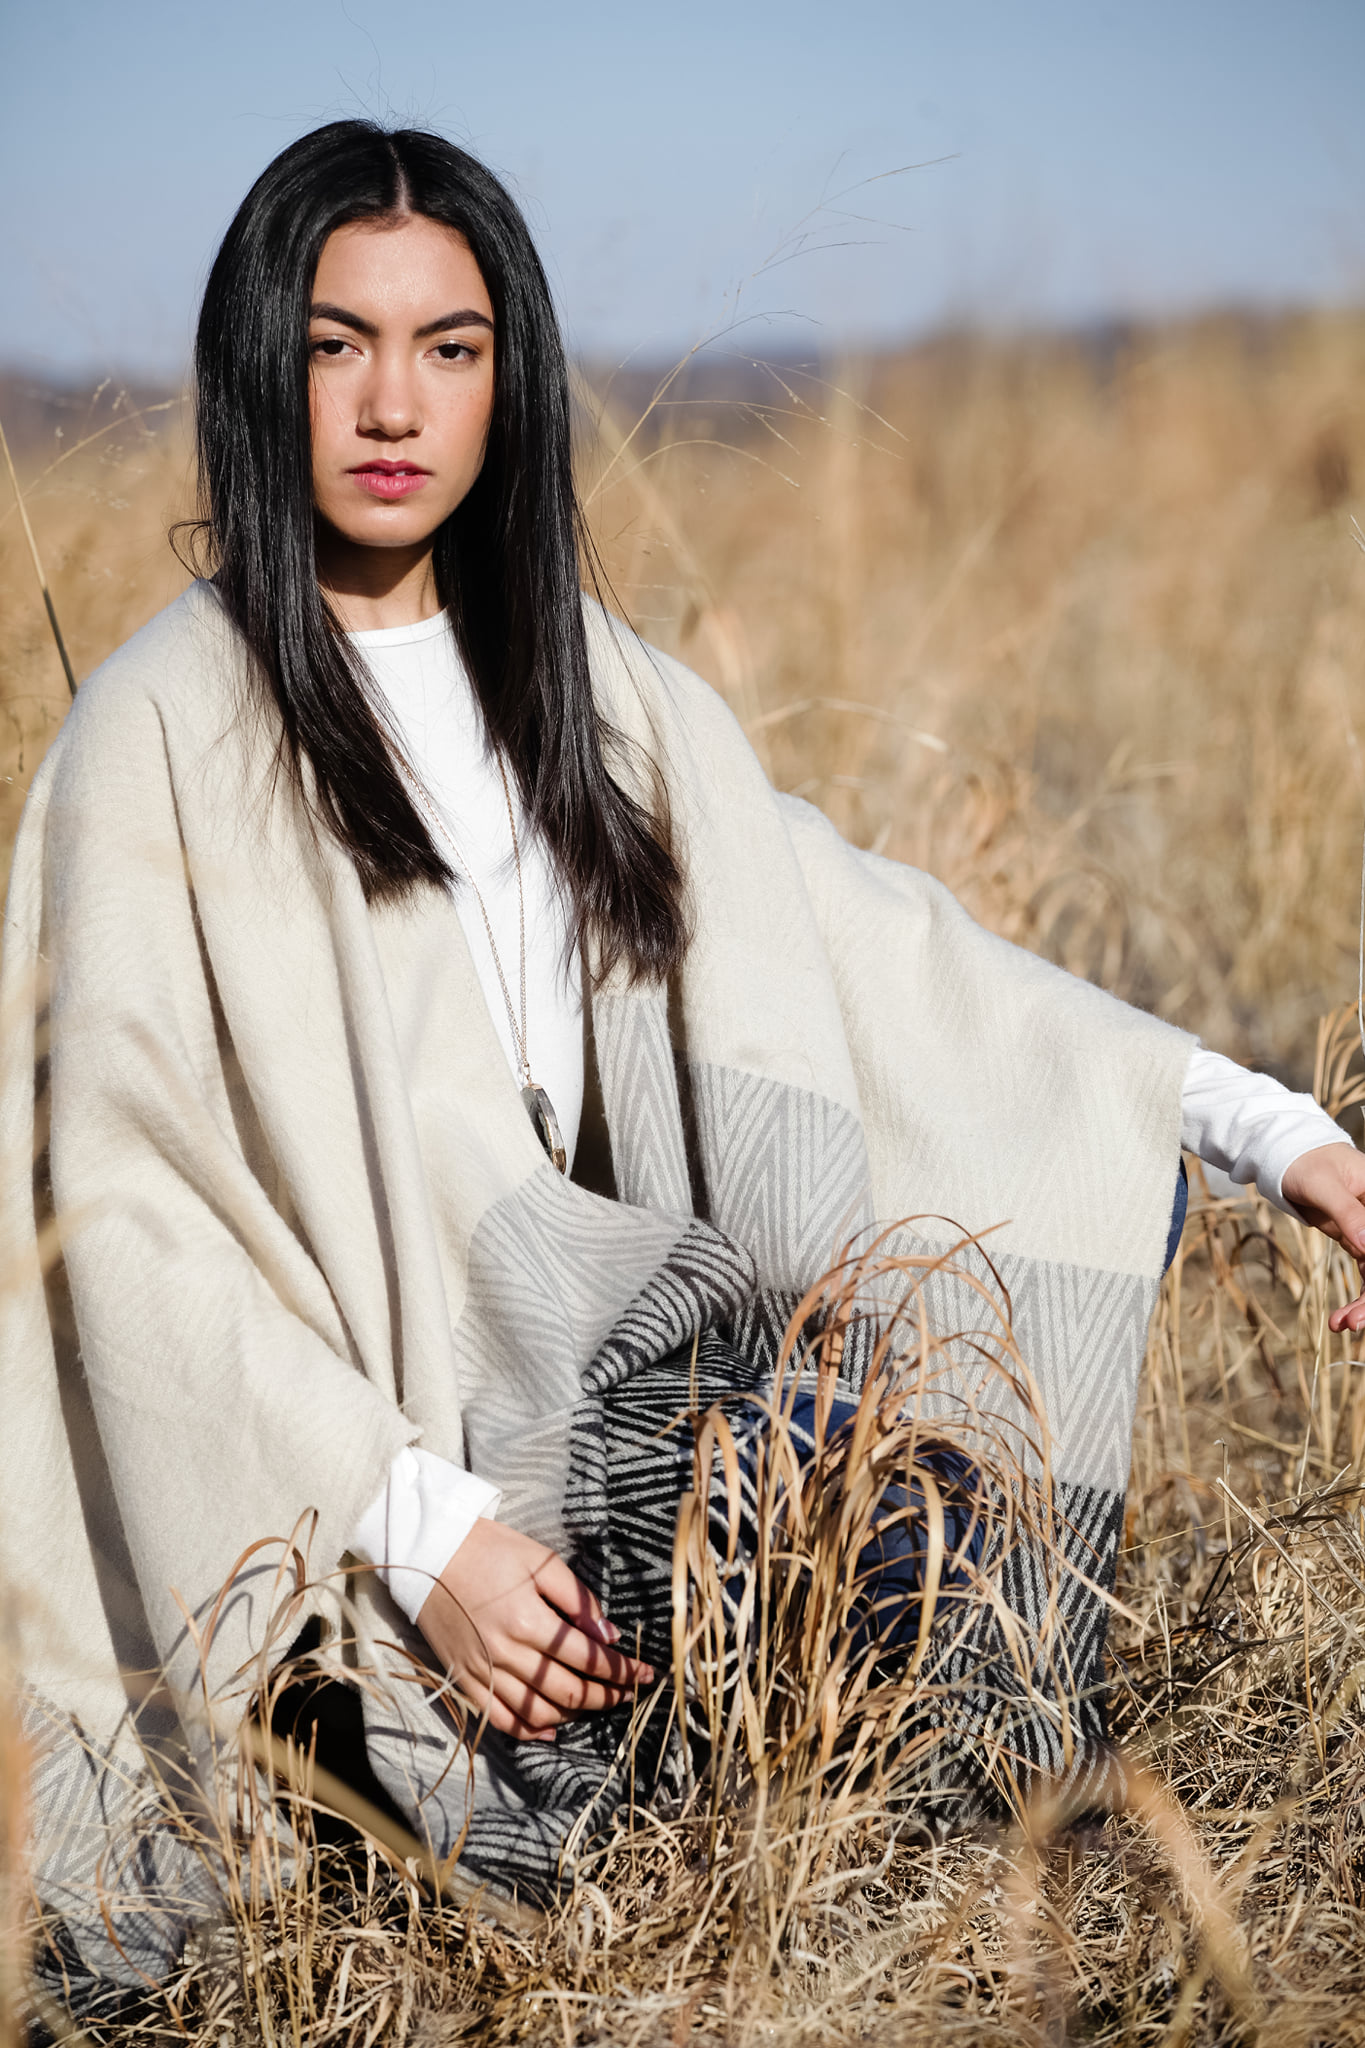 Body Shot Of Erica Modeling In A Wheat Field